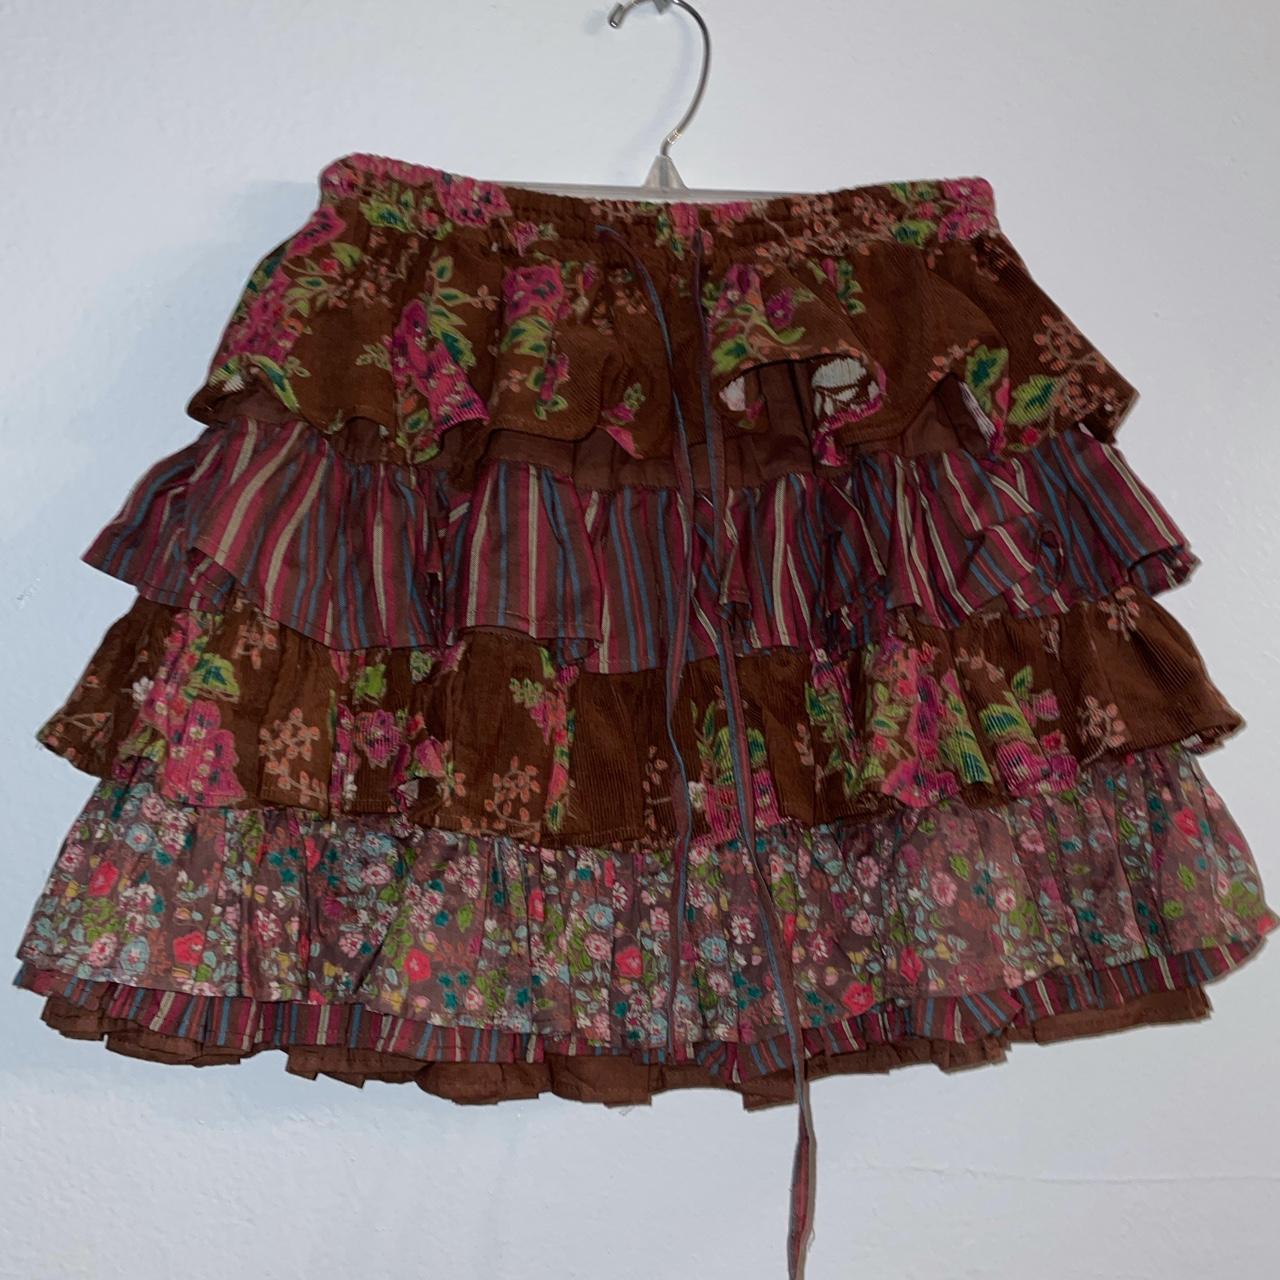 Ruffly Cottagecore Mini Skirt Size Size... - Depop